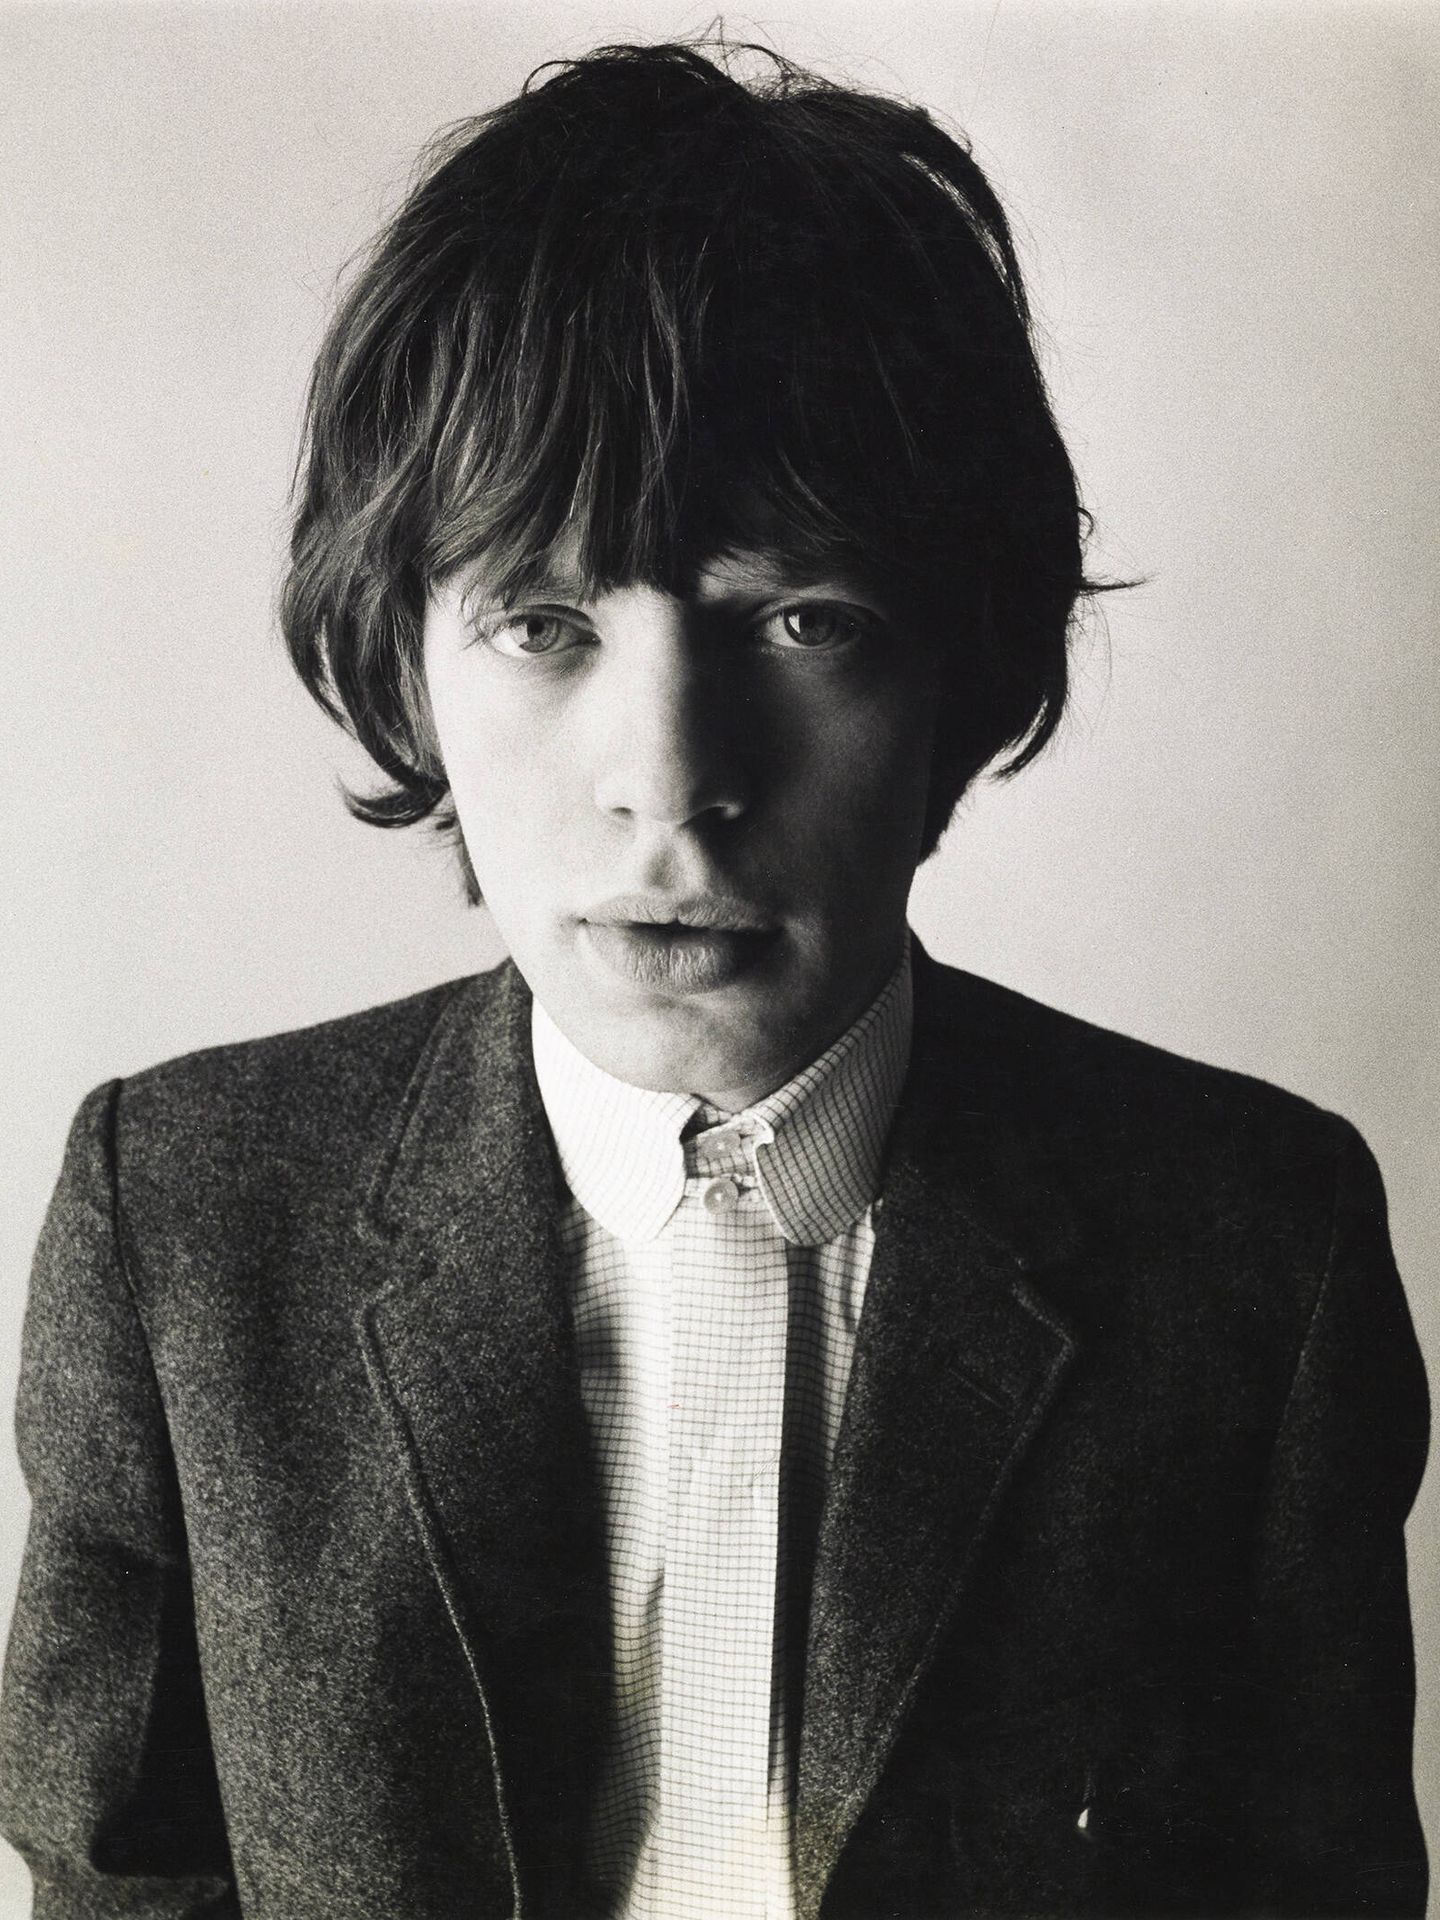 Mick Jagger, retratado por David Bailey en 1964. Vogue © Condé Nast